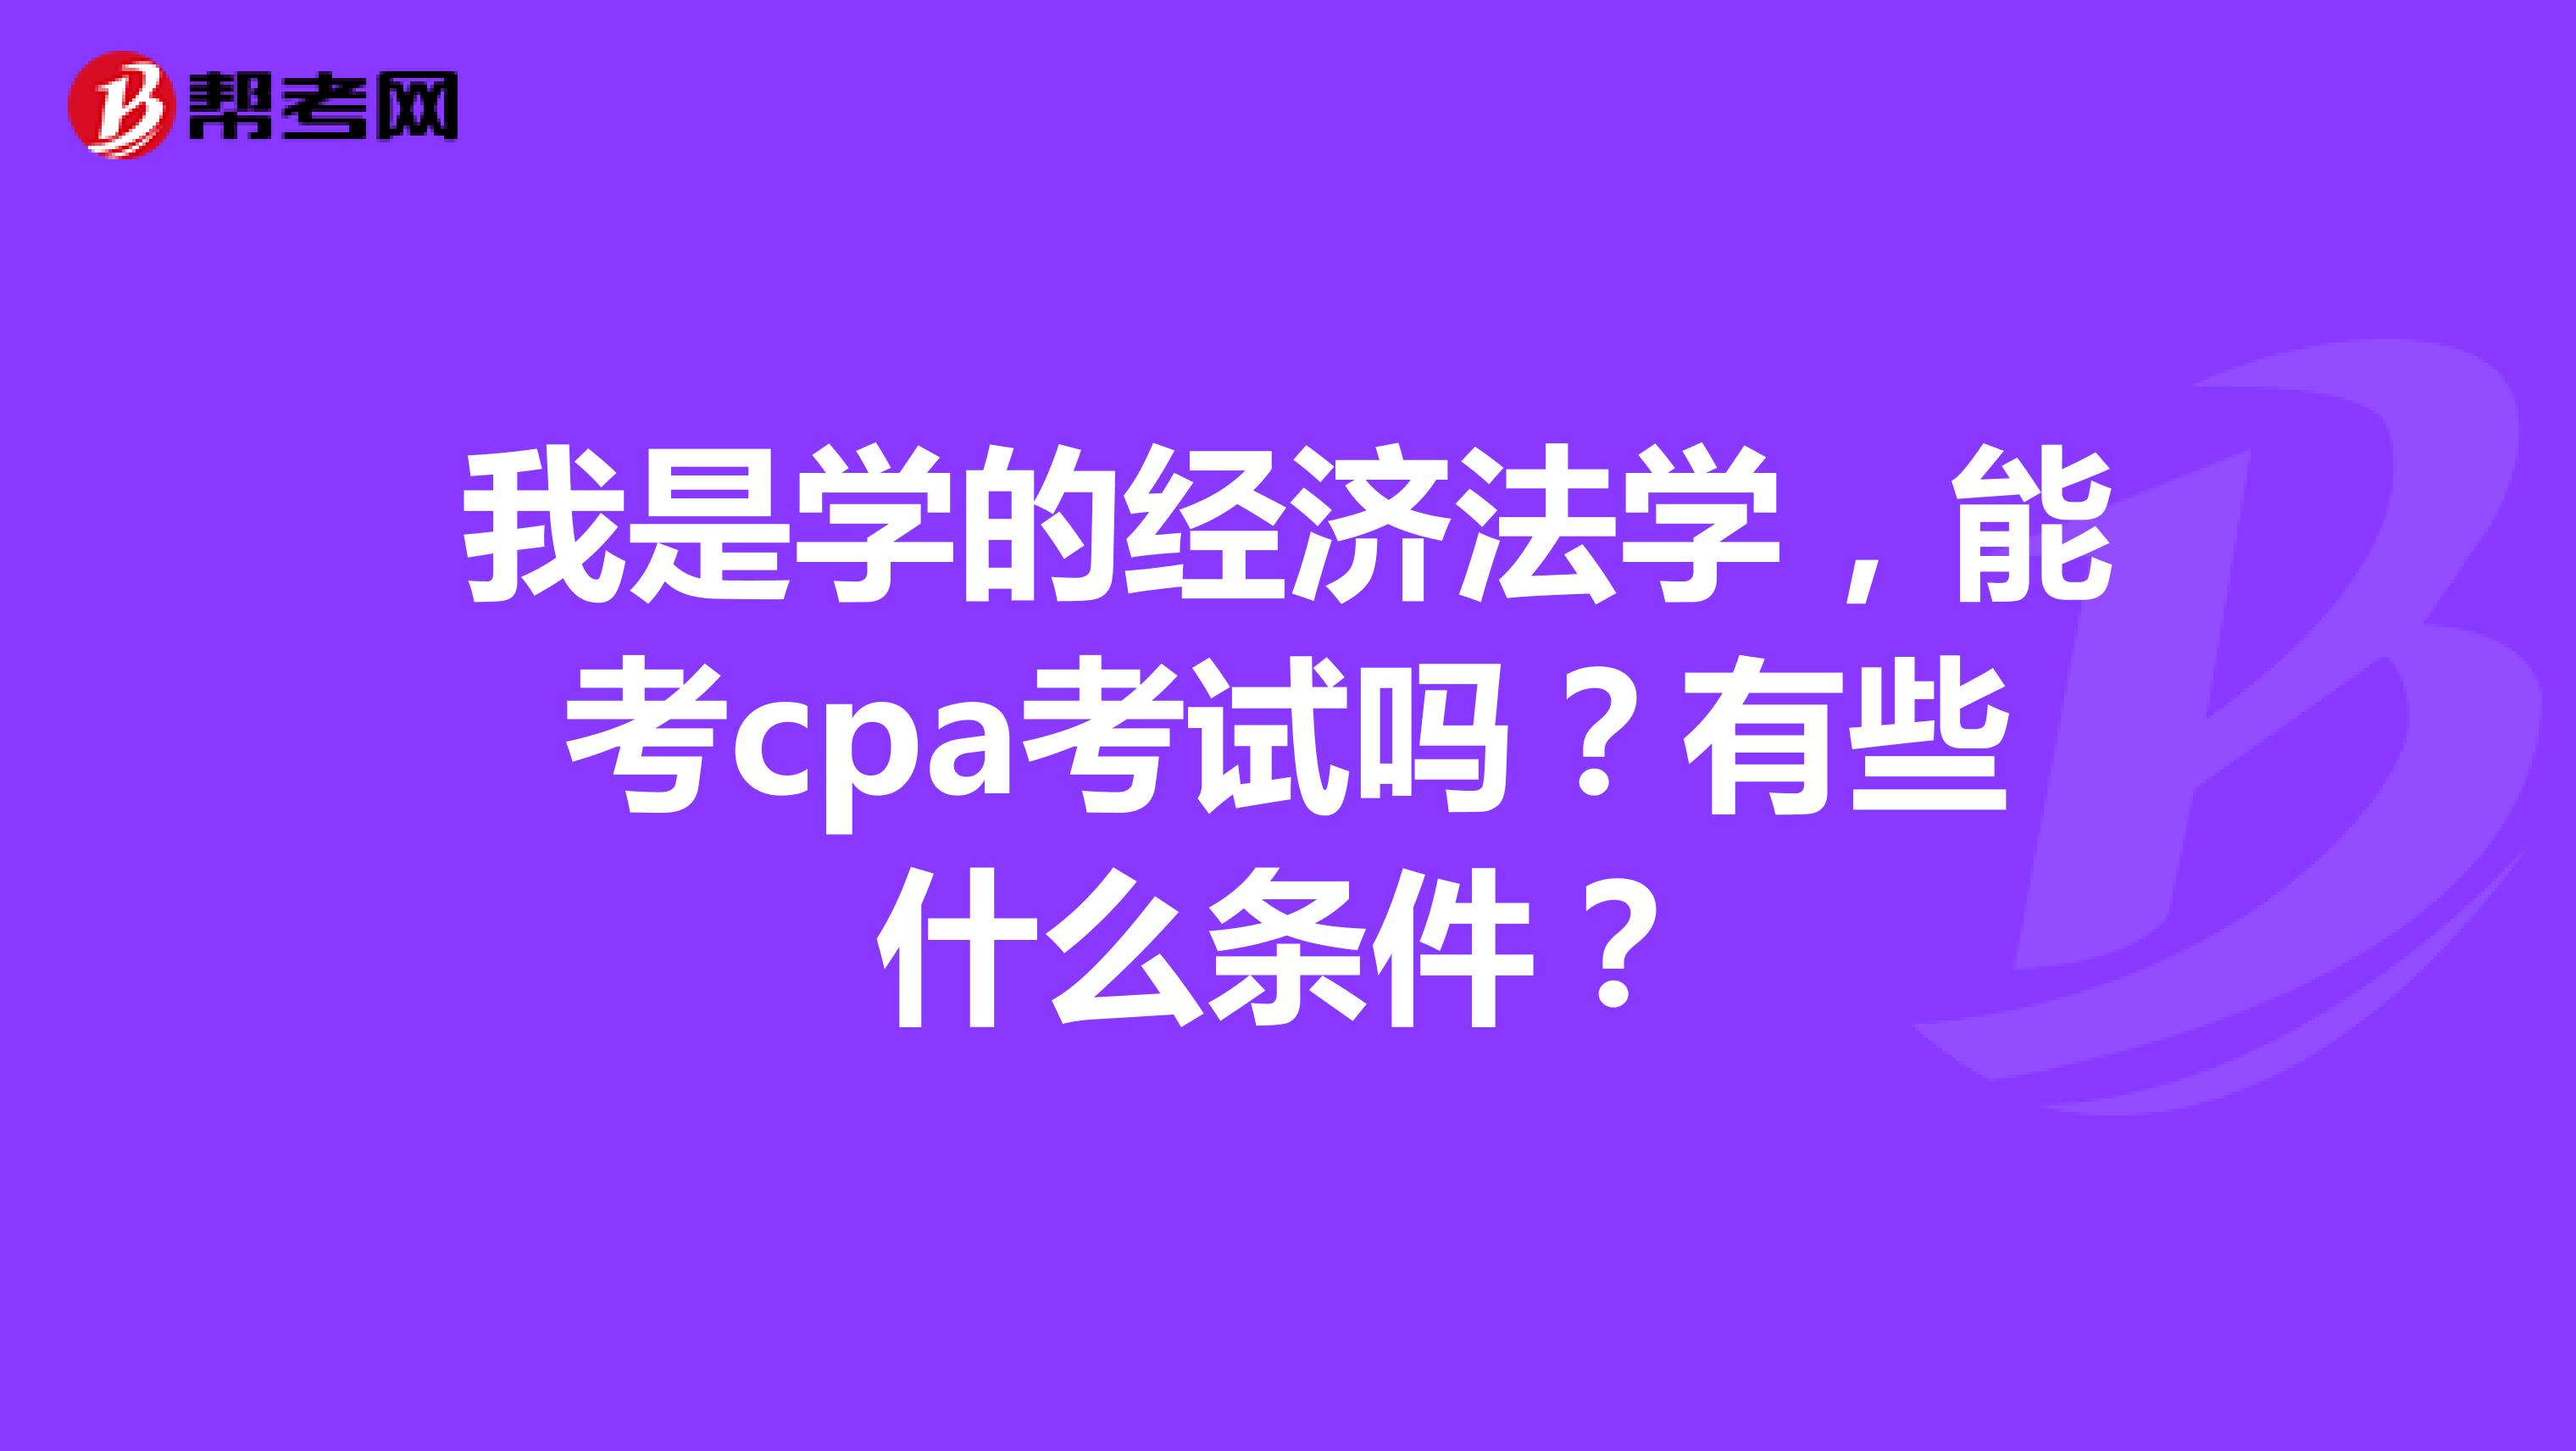 我是学的经济法学，能考cpa考试吗？有些什么条件？